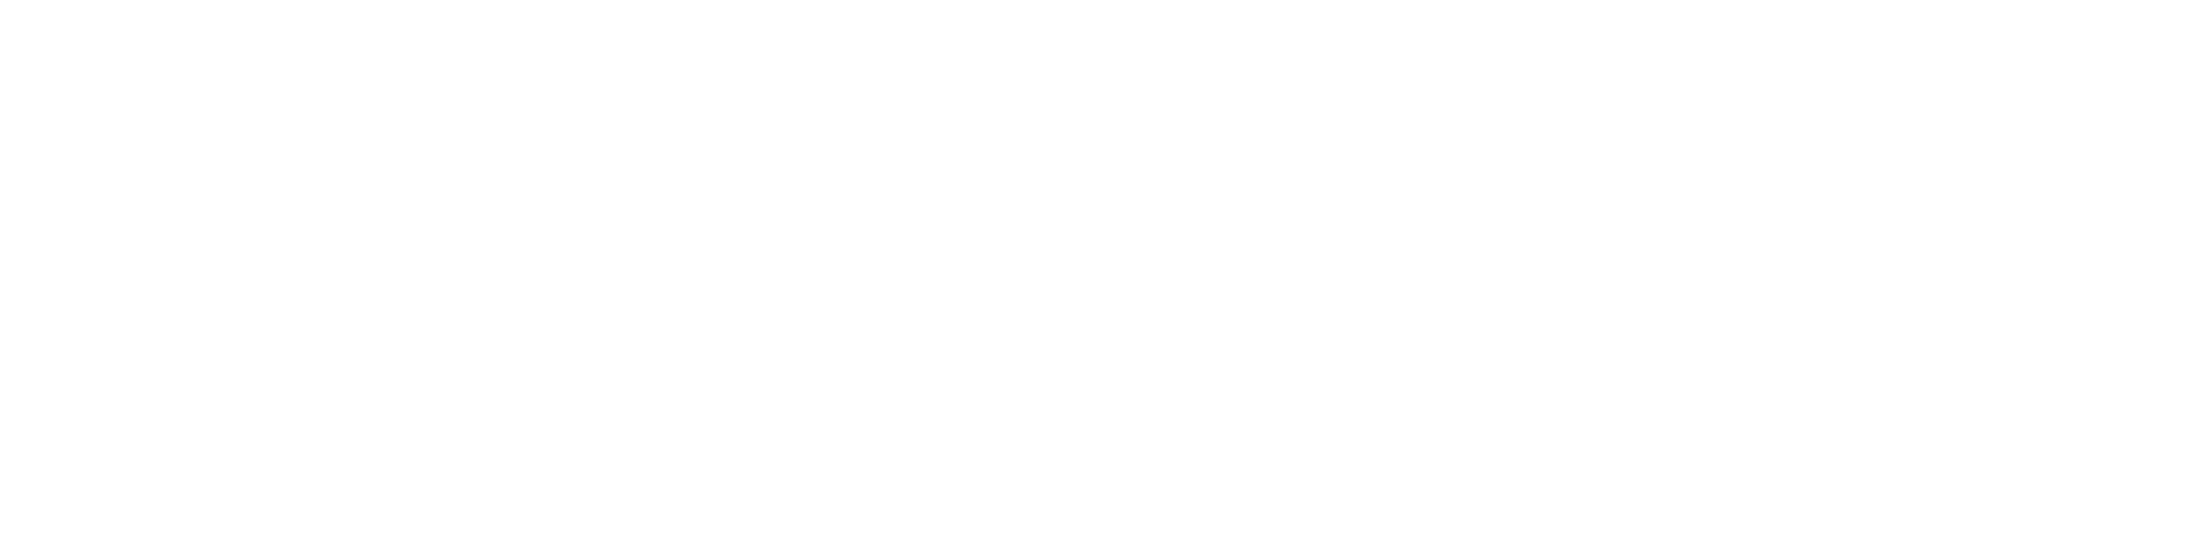 Renaissance.coach